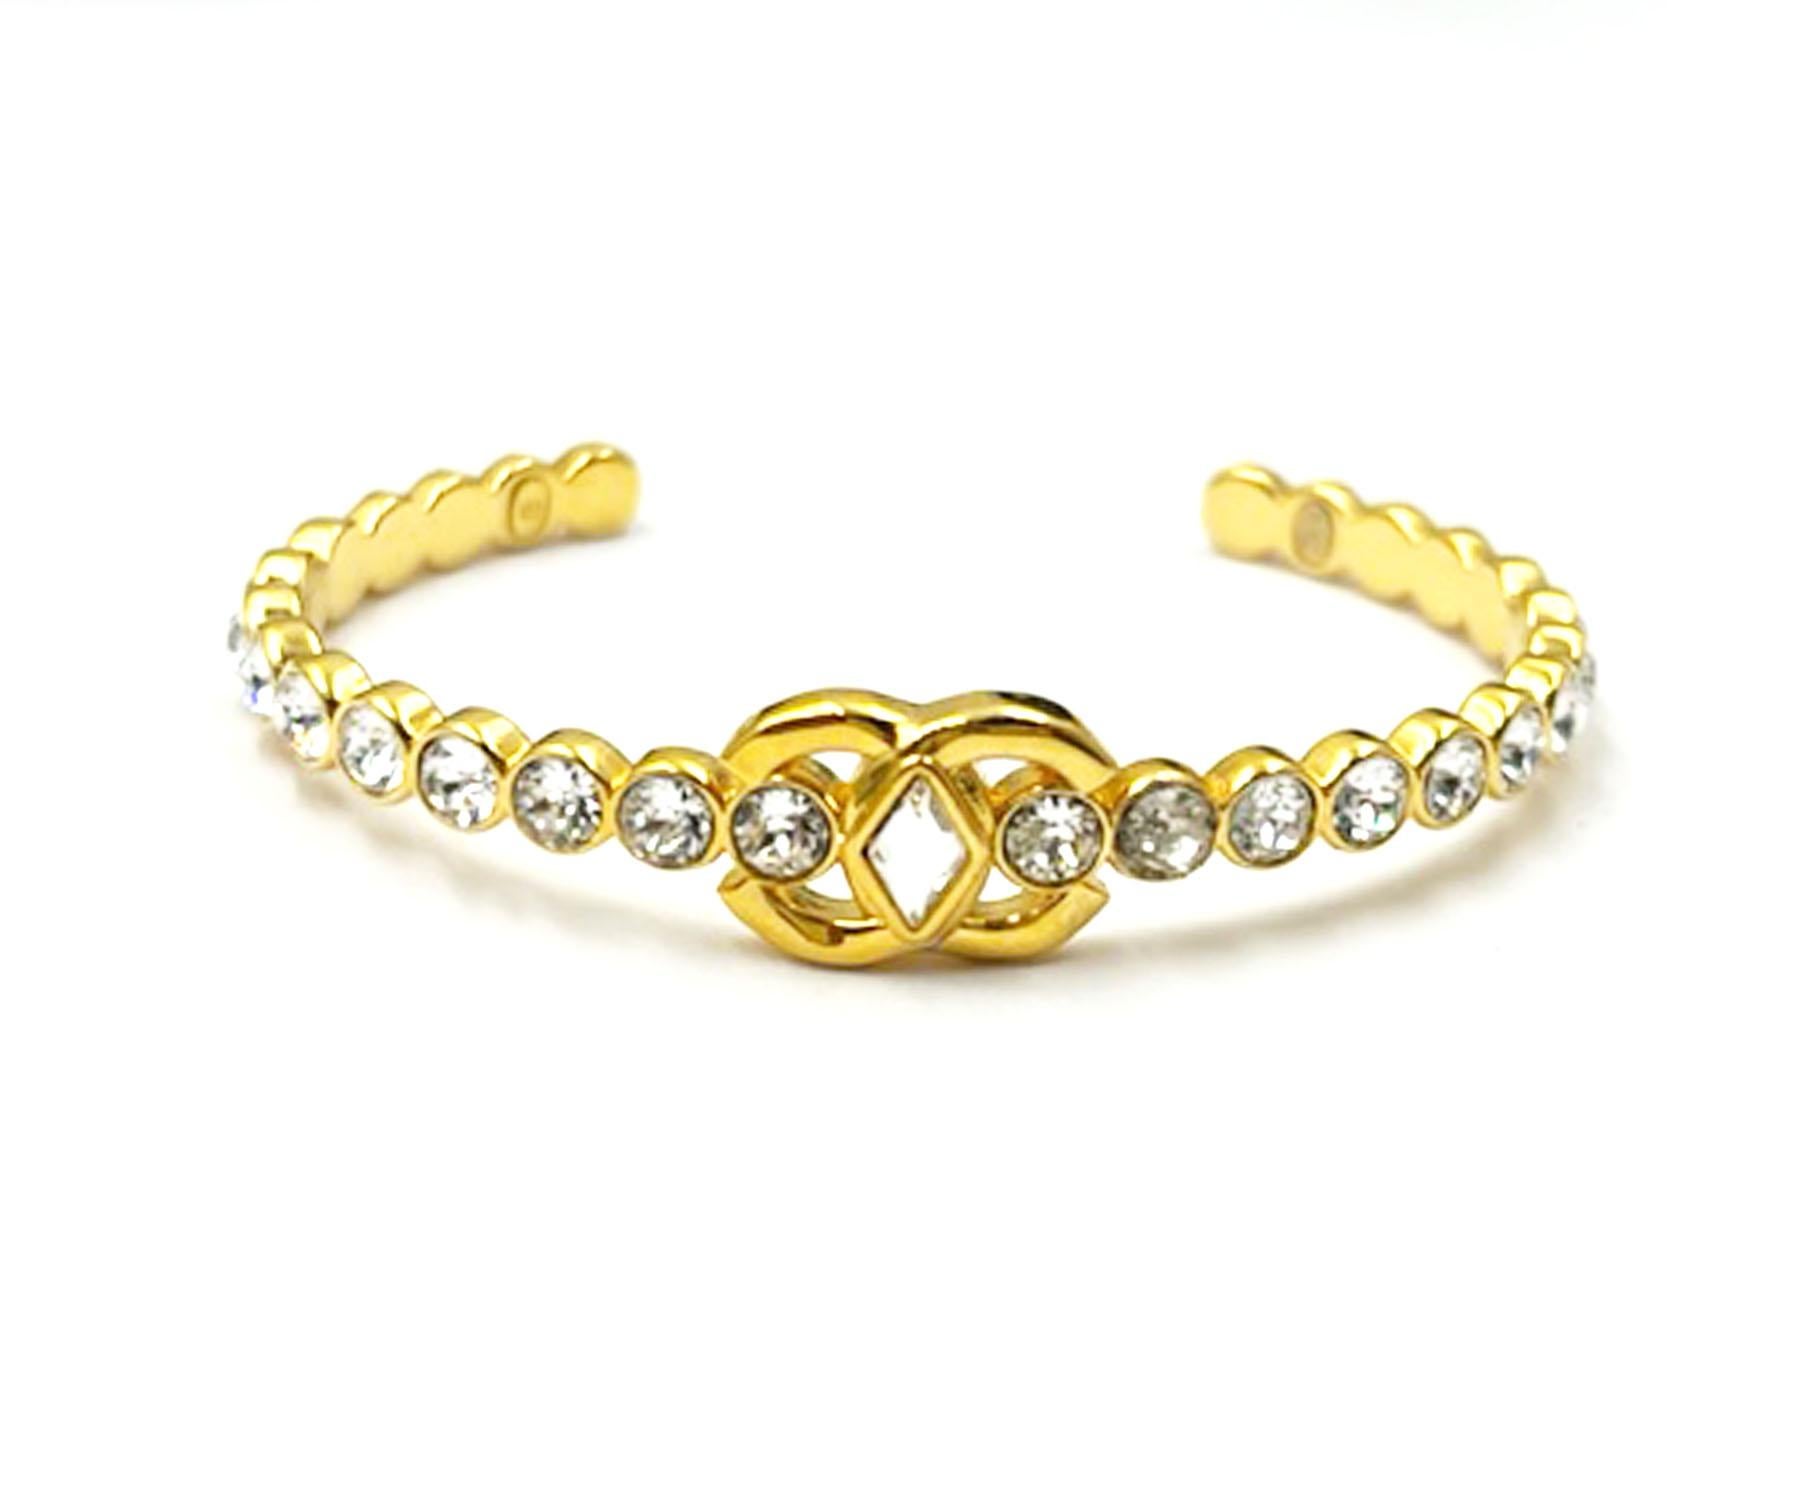 Chanel Vergoldetes CC Marquise-Manschettenarmband aus rundem Kristall, vergoldet

*Markiert 23
*Hergestellt in Italien
*Wird mit der Originalverpackung und dem Etui geliefert.

-Sie ist ungefähr 2,25